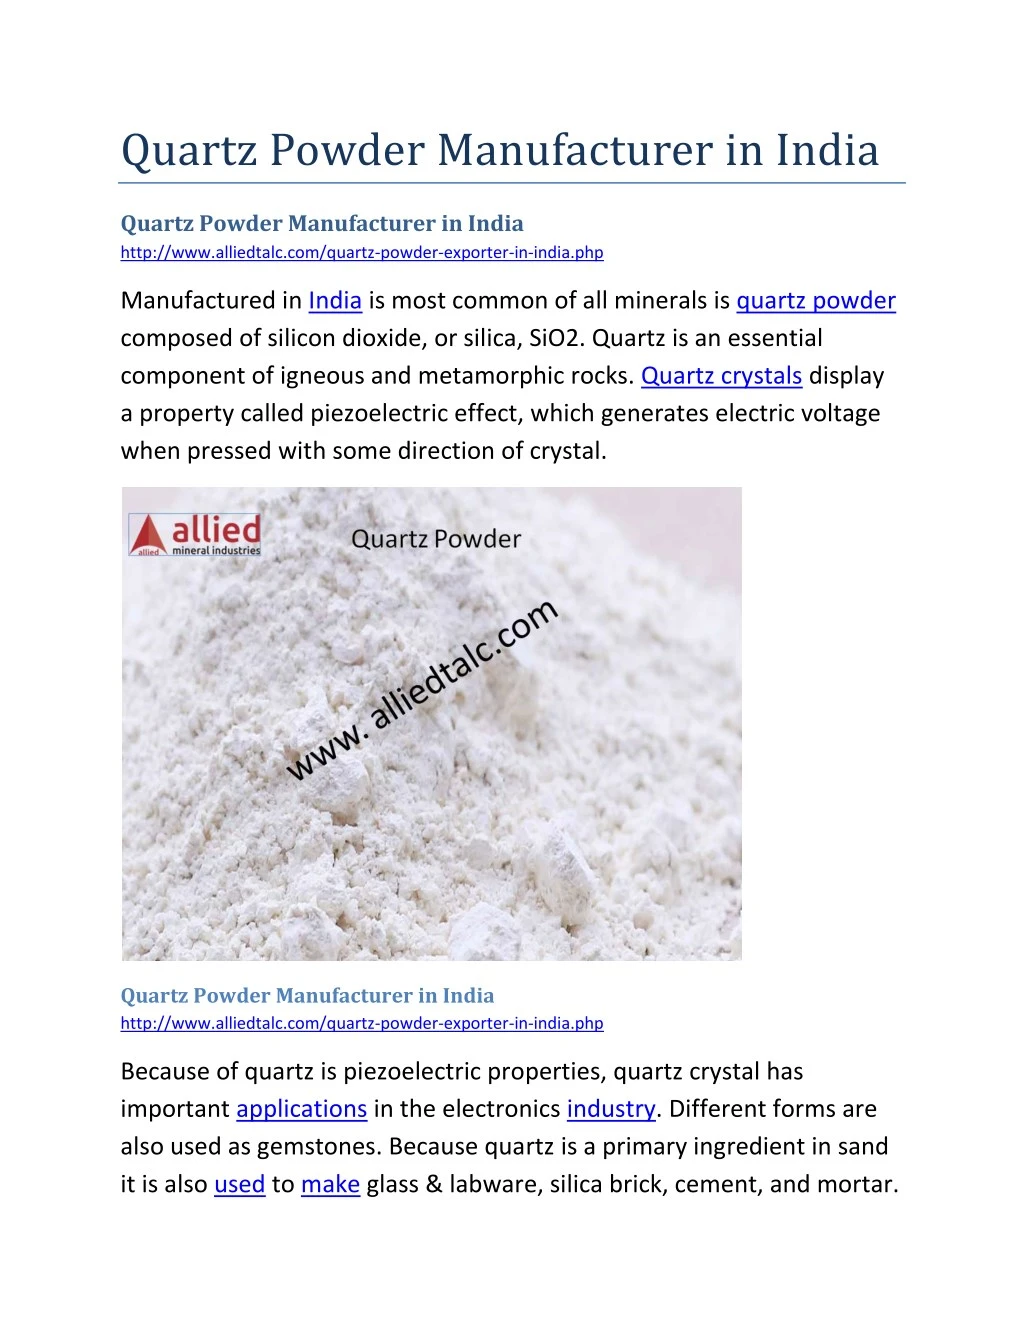 quartz powder manufacturer in india